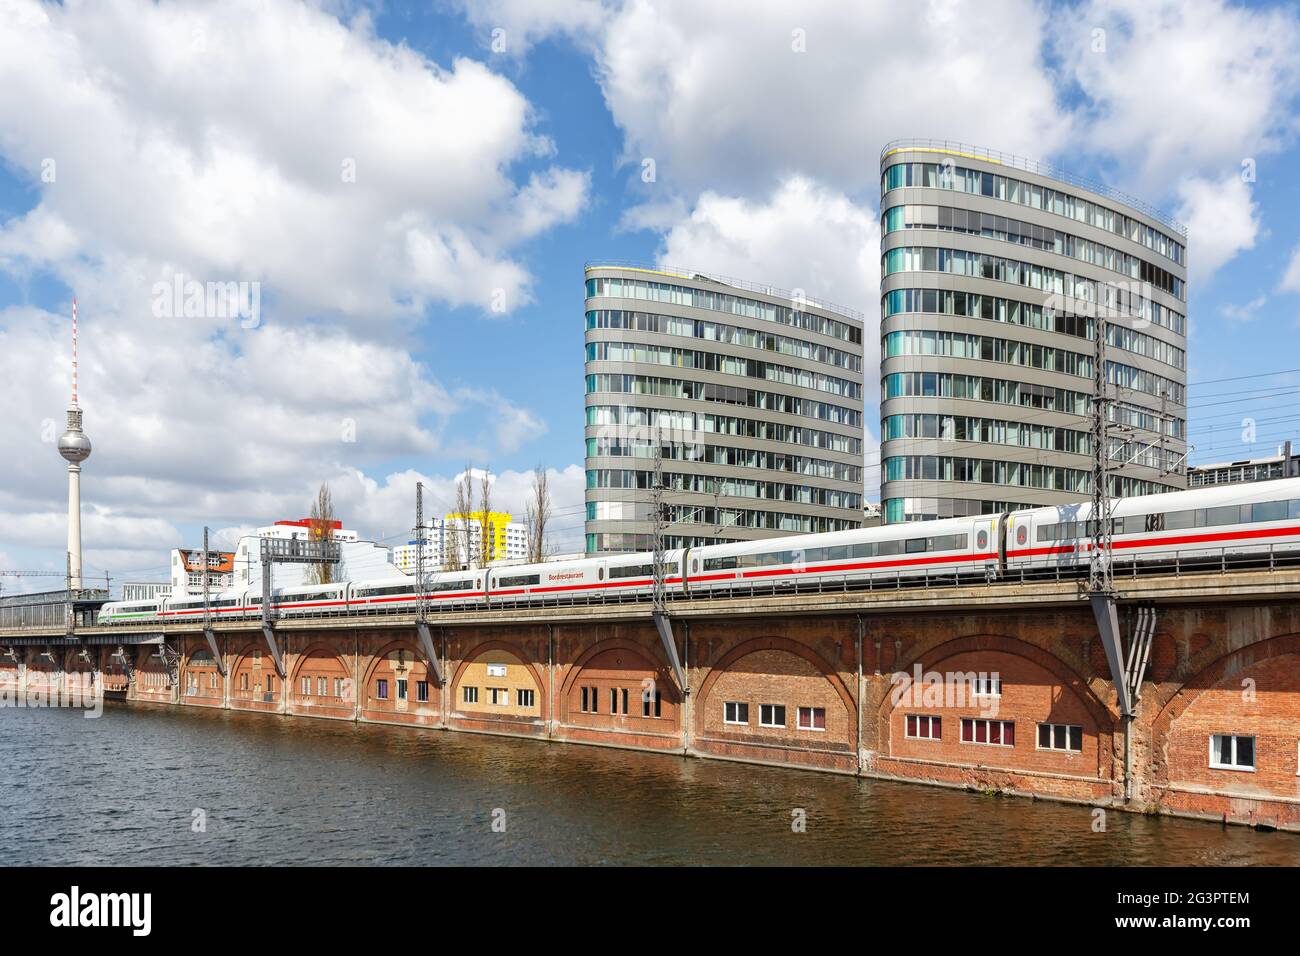 Berlin, Germany - April 23, 2021: ICE 2 high-speed train of Deutsche Bahn DB near Jannowitz bridge in Berlin, Germany. Stock Photo